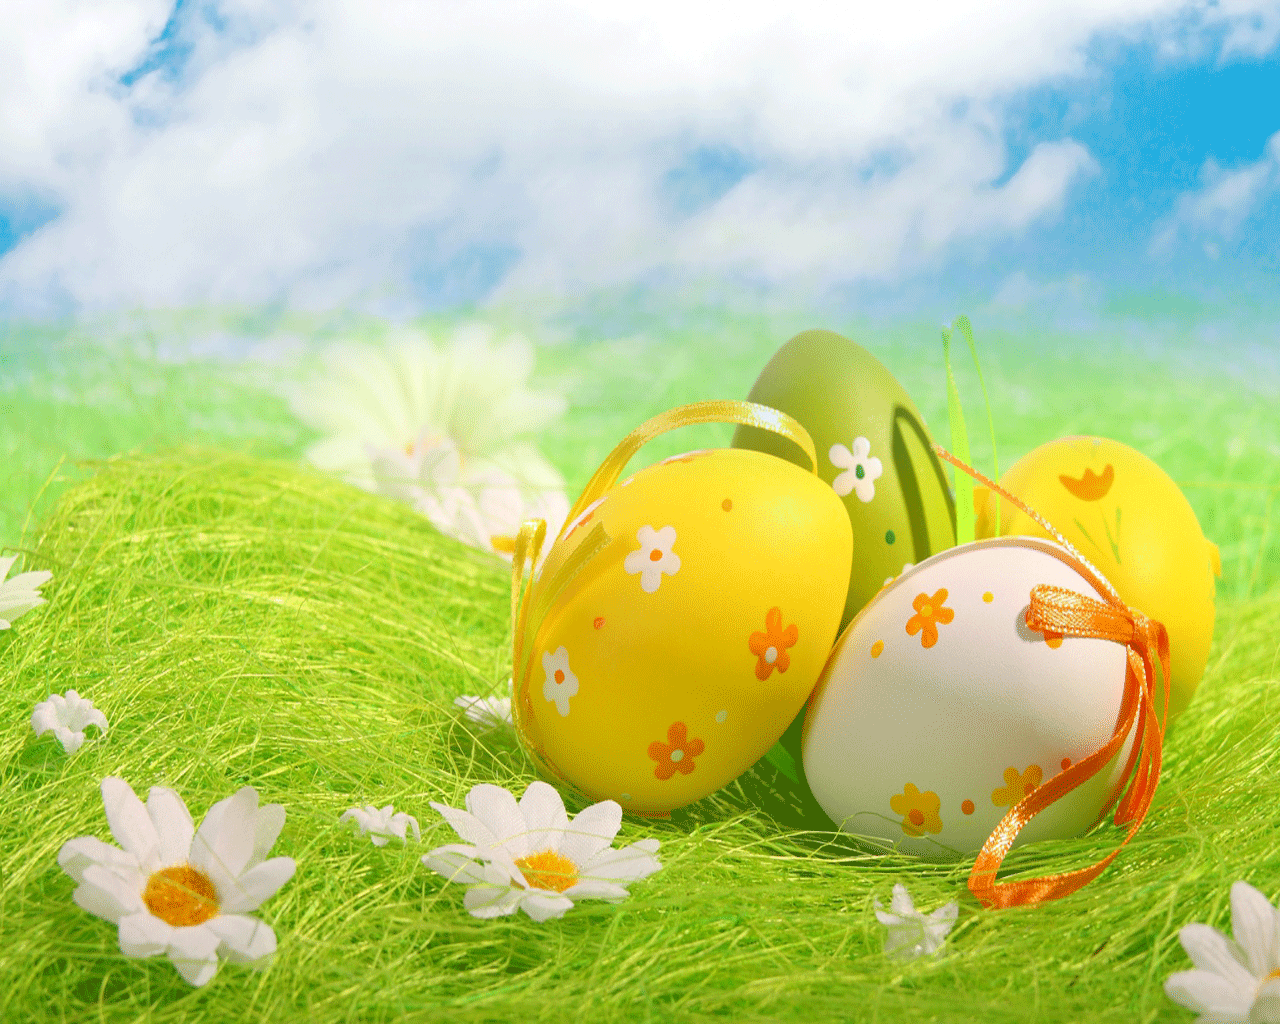 Happy Easter. Easter wallpaper, Easter egg cartoon, Easter eggs